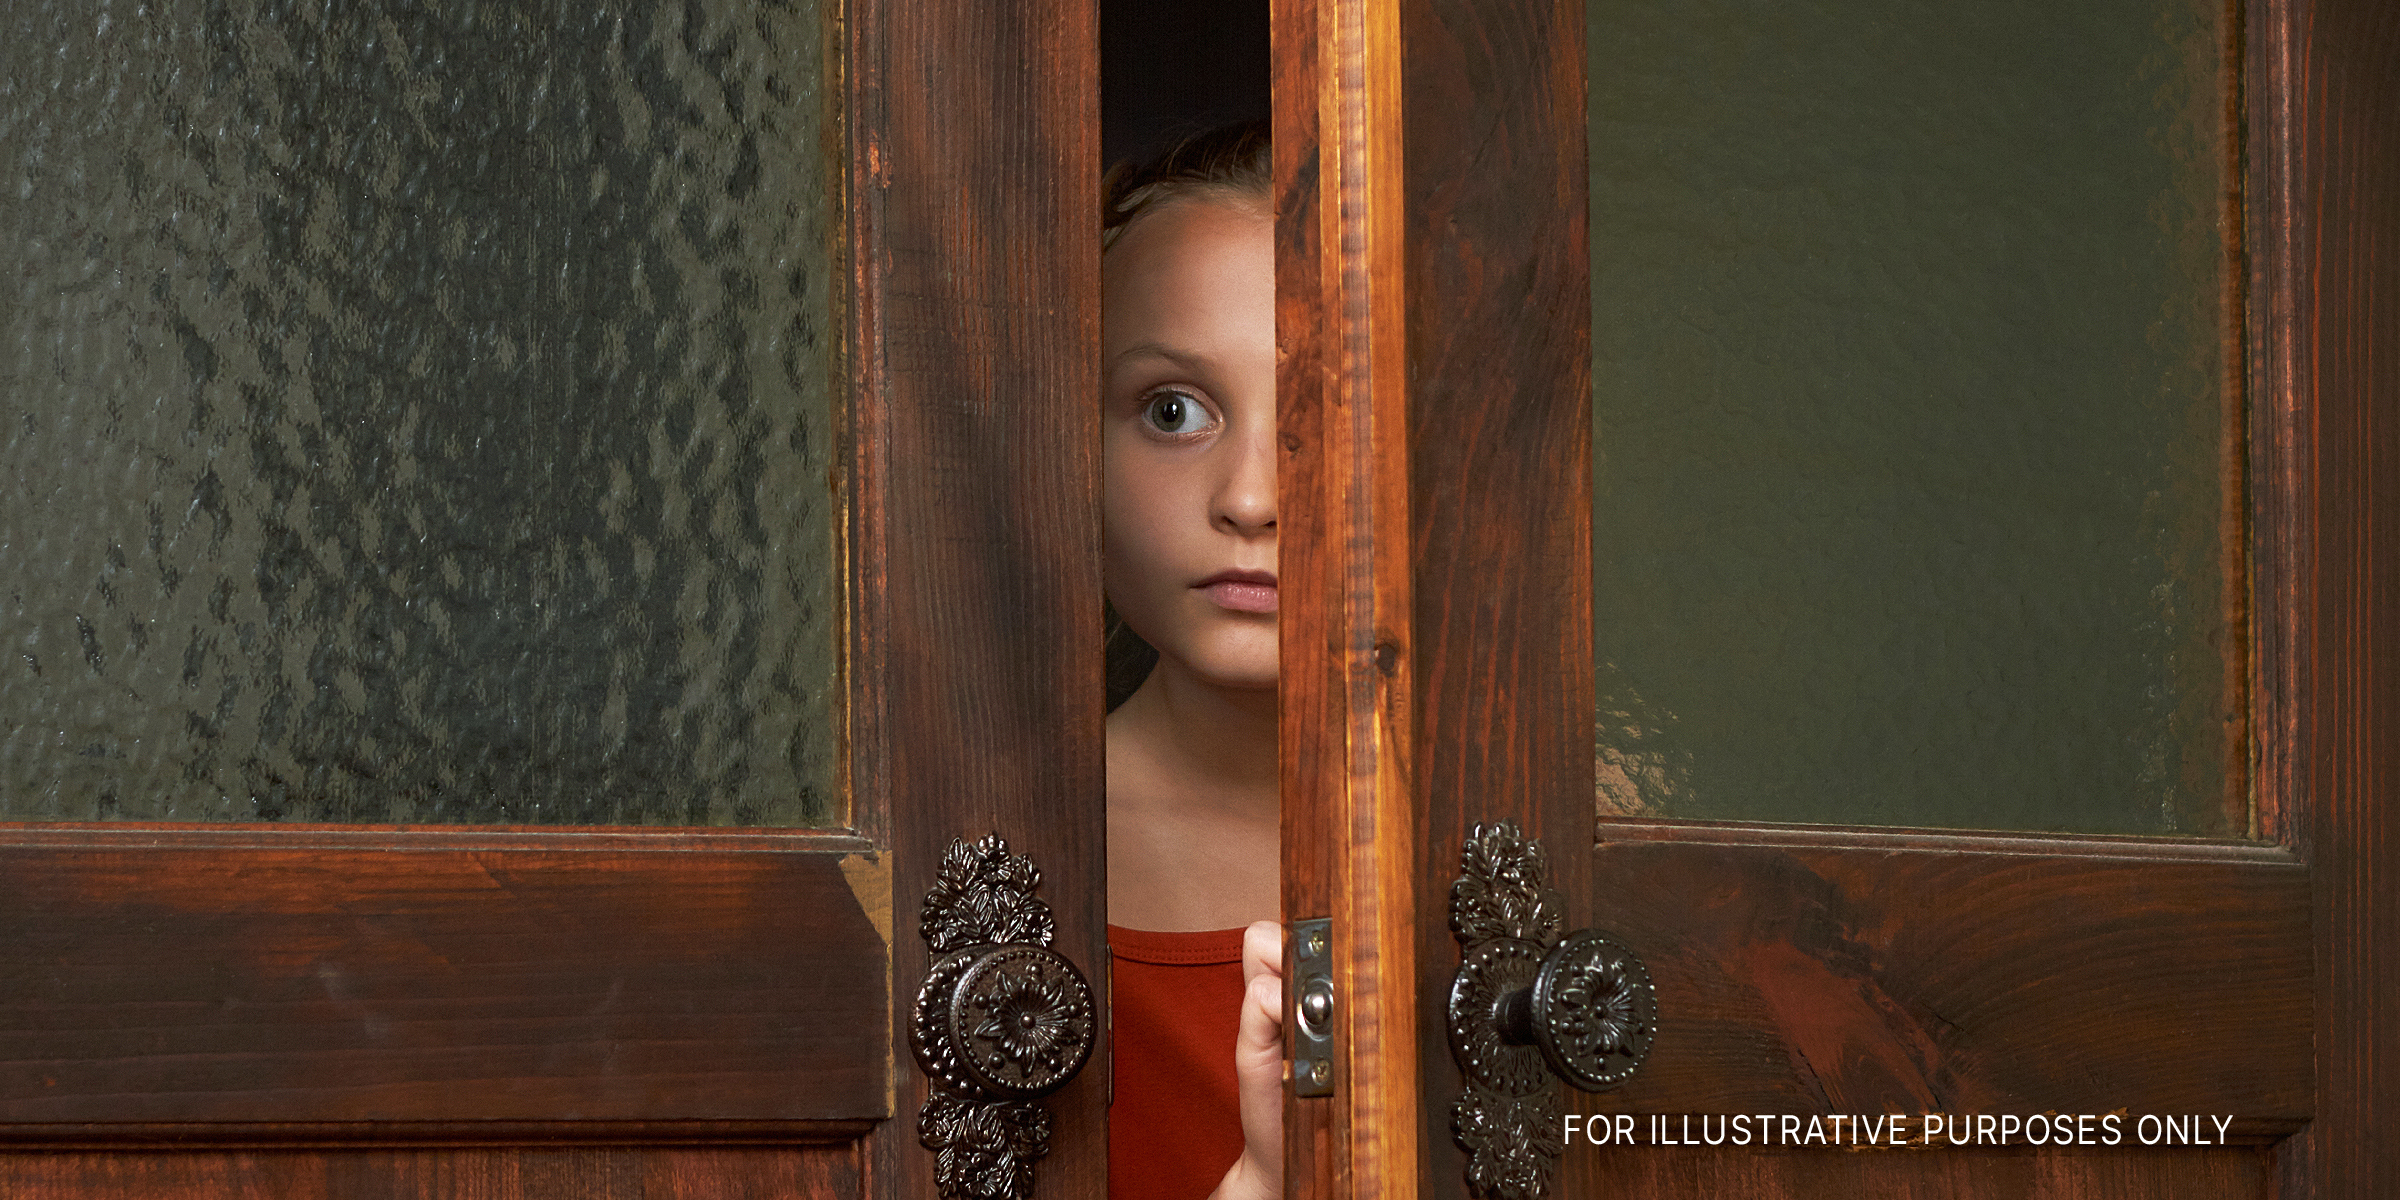 Ein kleines verängstigtes Mädchen schaut durch den Türschlitz | Quelle: Shutterstock